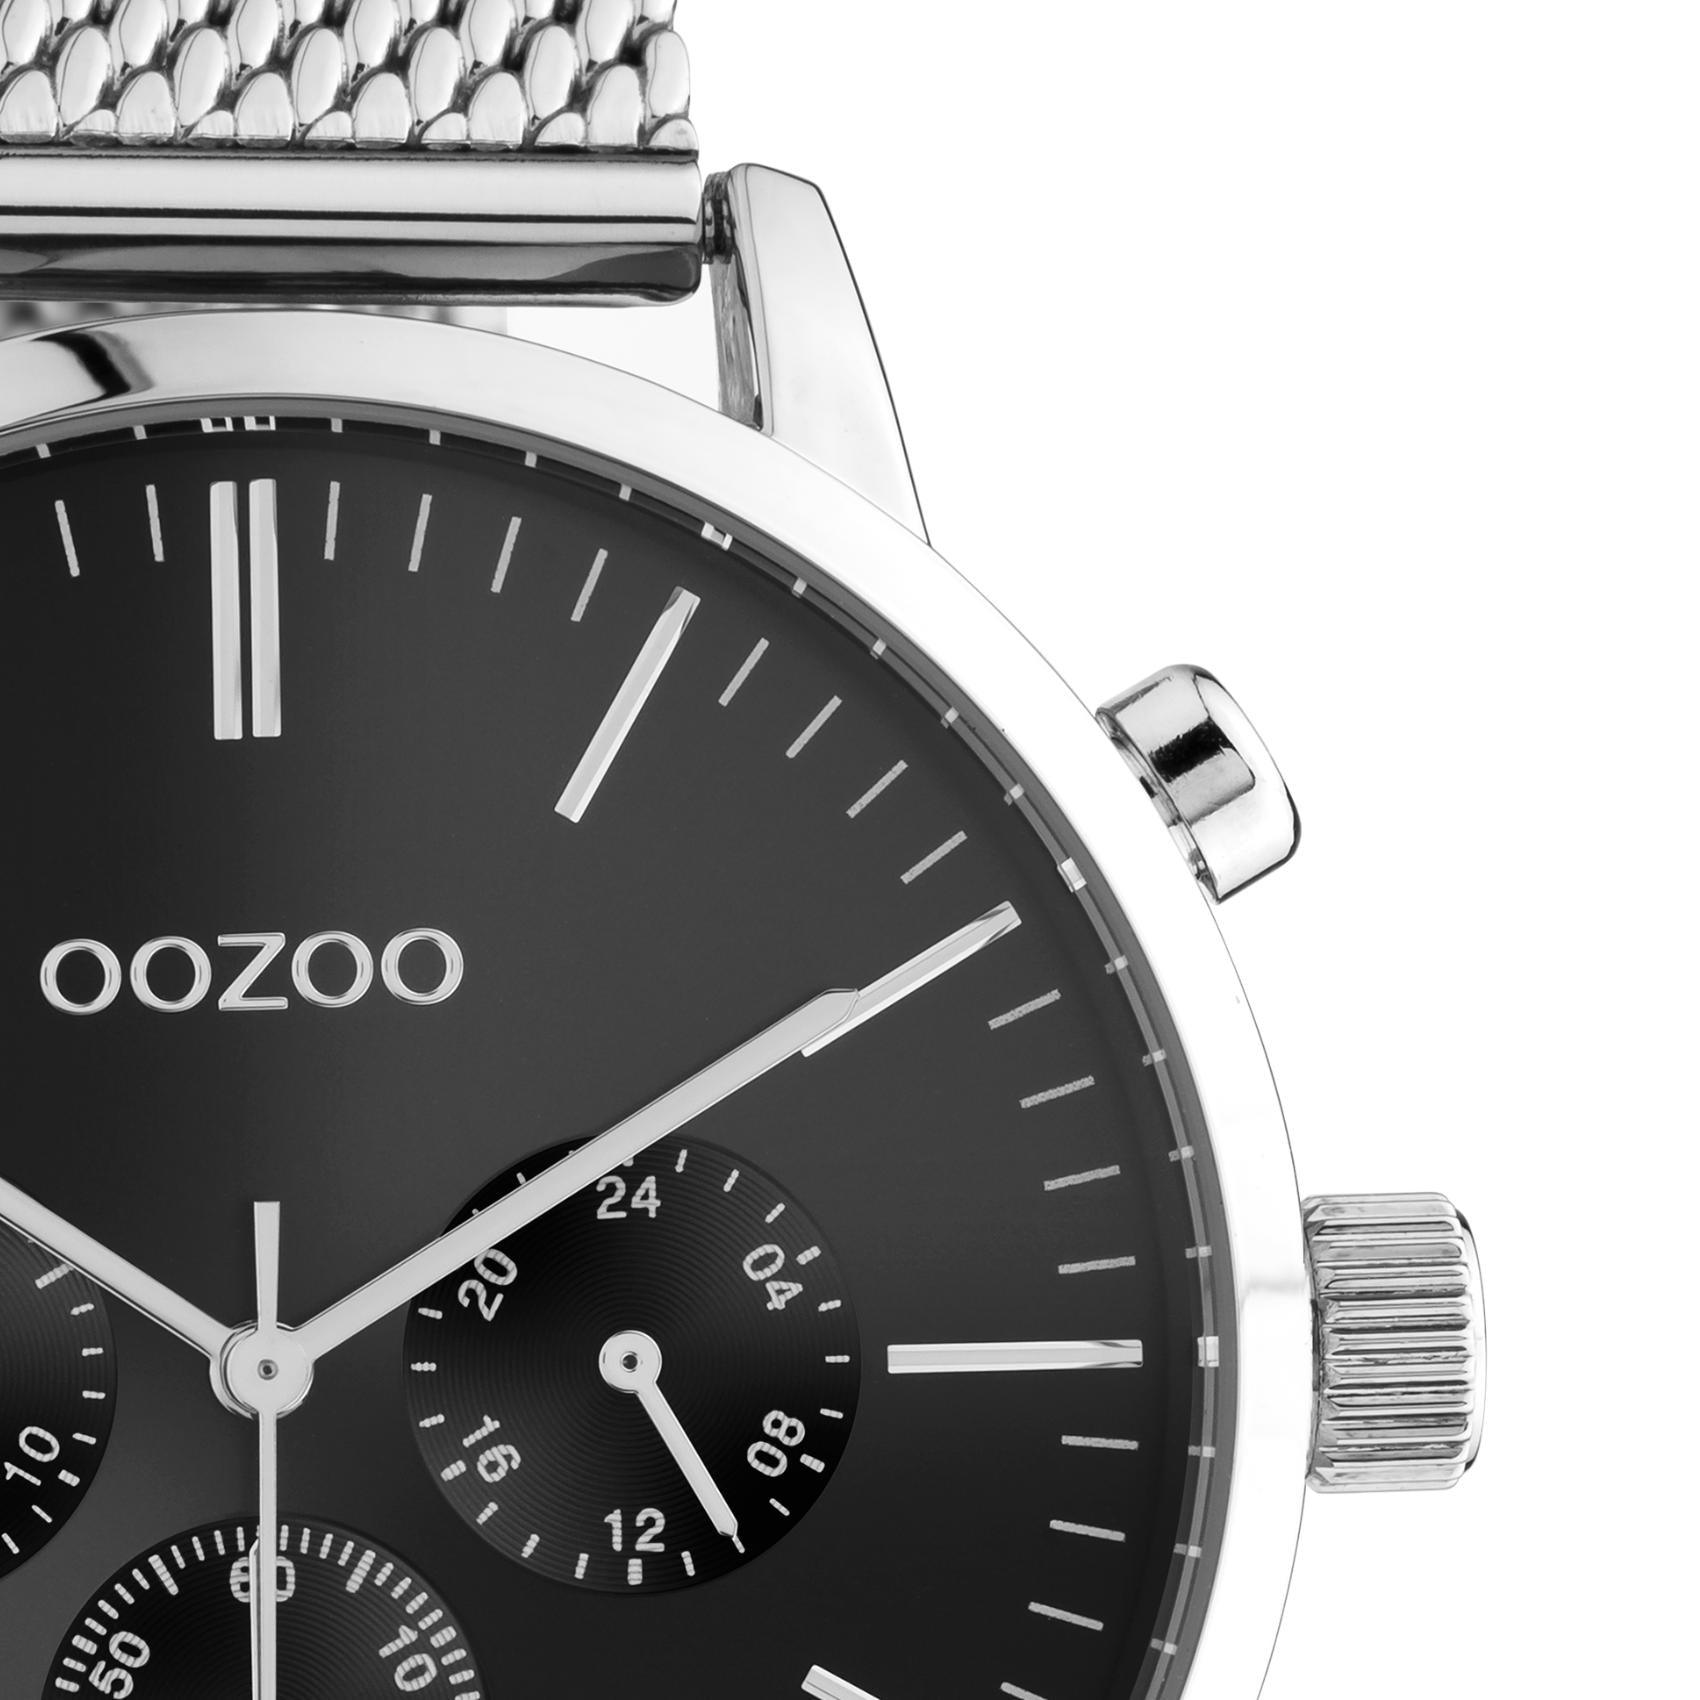 Ρολόι Oozoo C10913 χρονογράφος με ασημί ατσάλινο μπρασελέ μαύρο καντράν διαμέτρου 45mm και μηχανισμό μπαταρίας quartz.